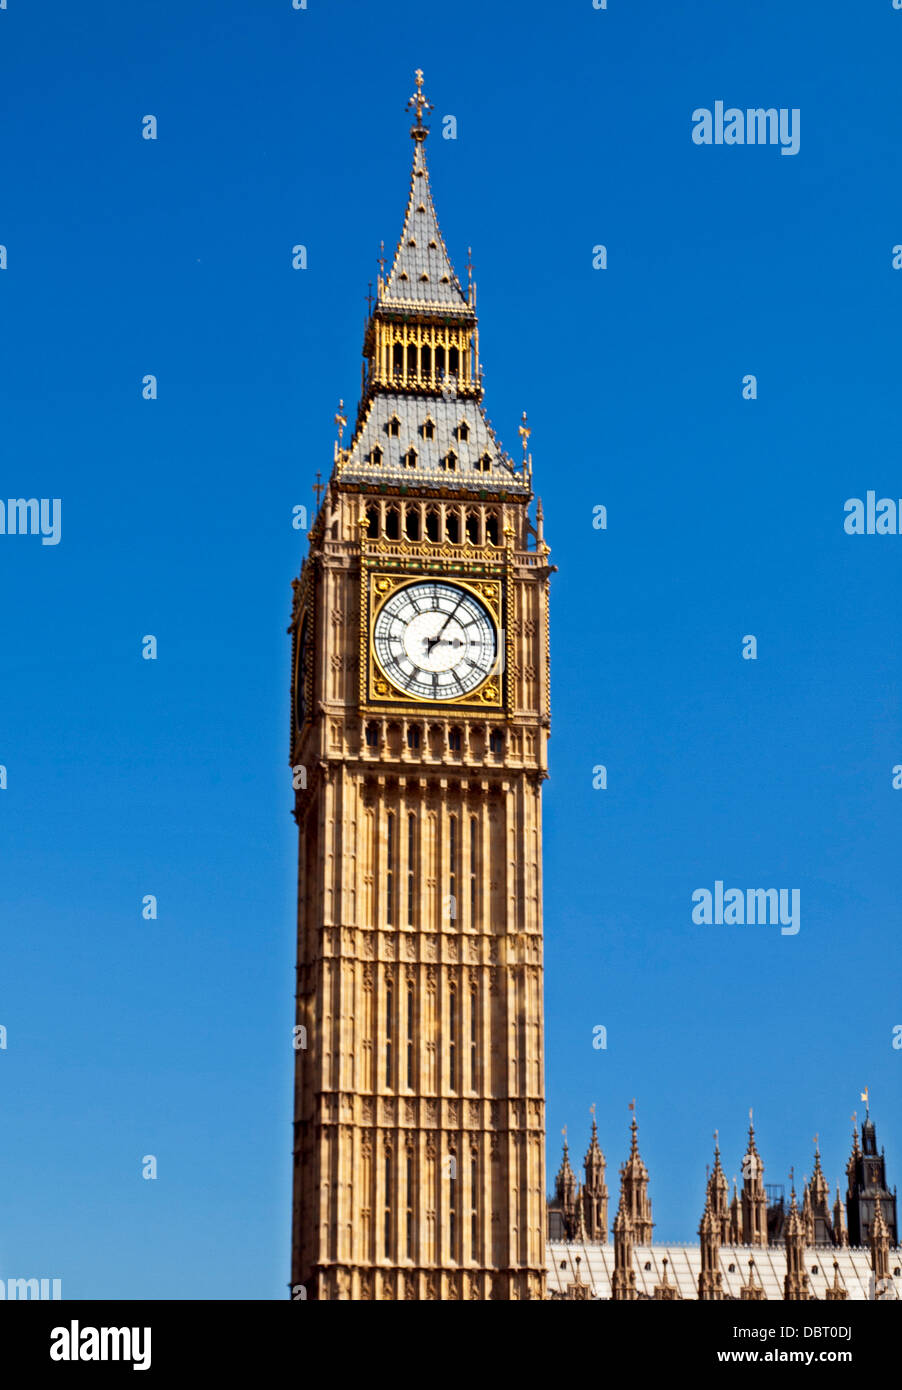 Vue de Big Ben, situé à l'extrémité nord du Palais de Westminster (Parlement), City of Westminster Banque D'Images